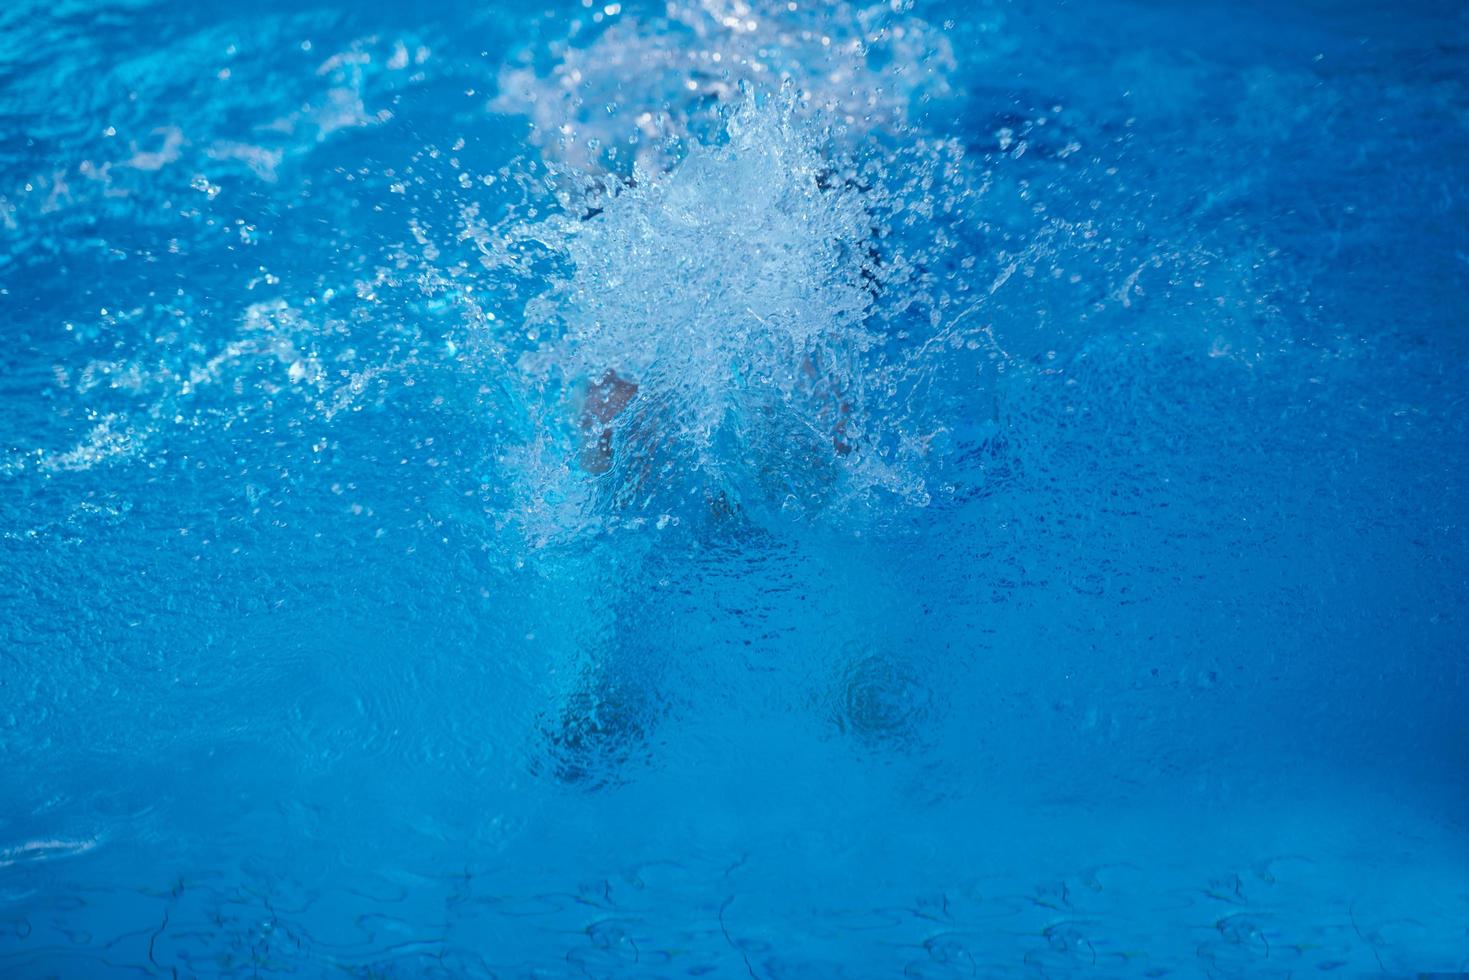 Schwimmerübung auf Hallenbad foto